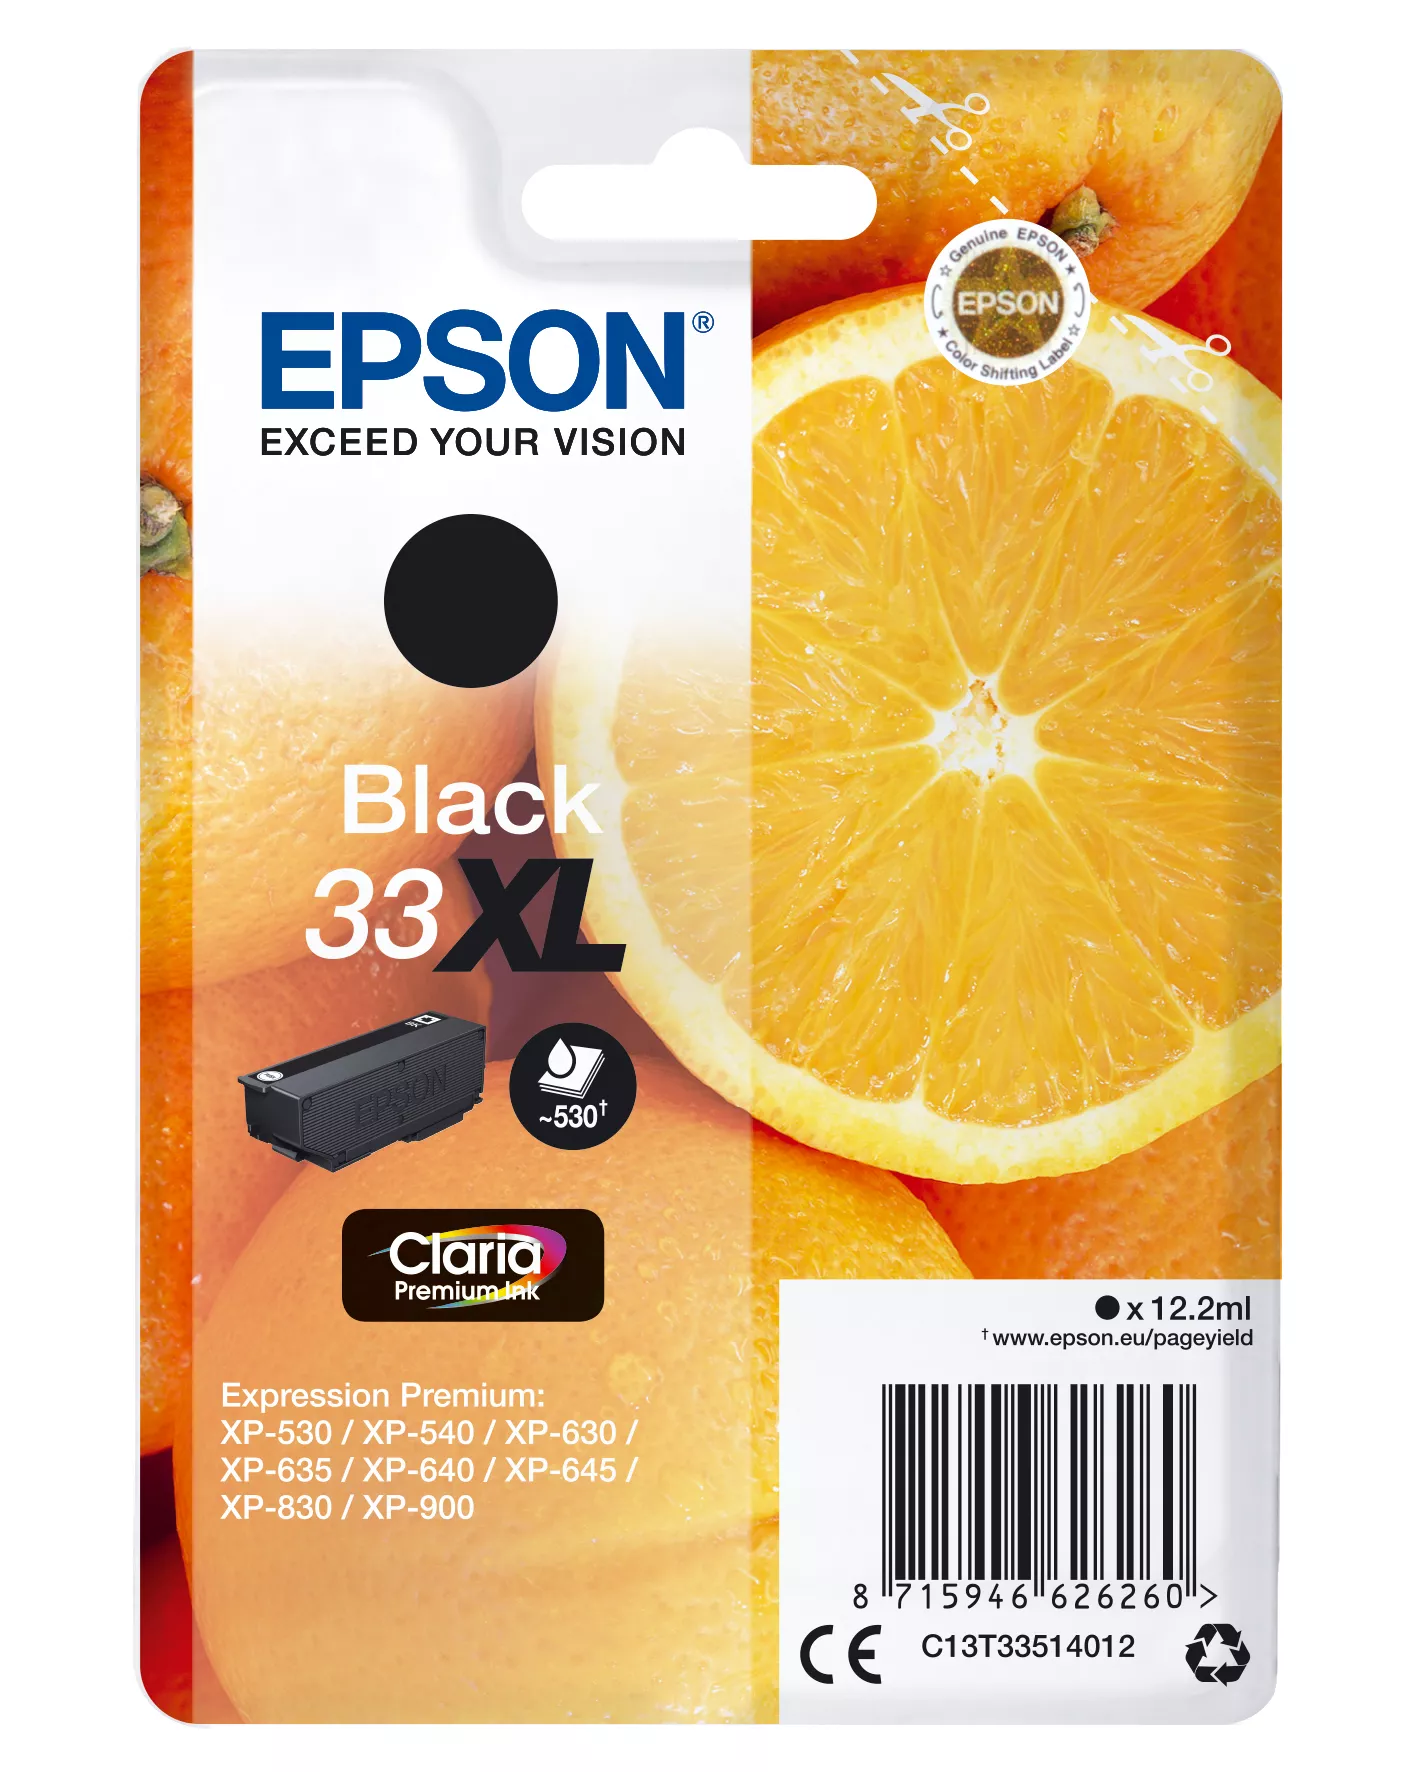 Achat EPSON 33XL Cartouche encre Oranges Claria Premium Noir au meilleur prix